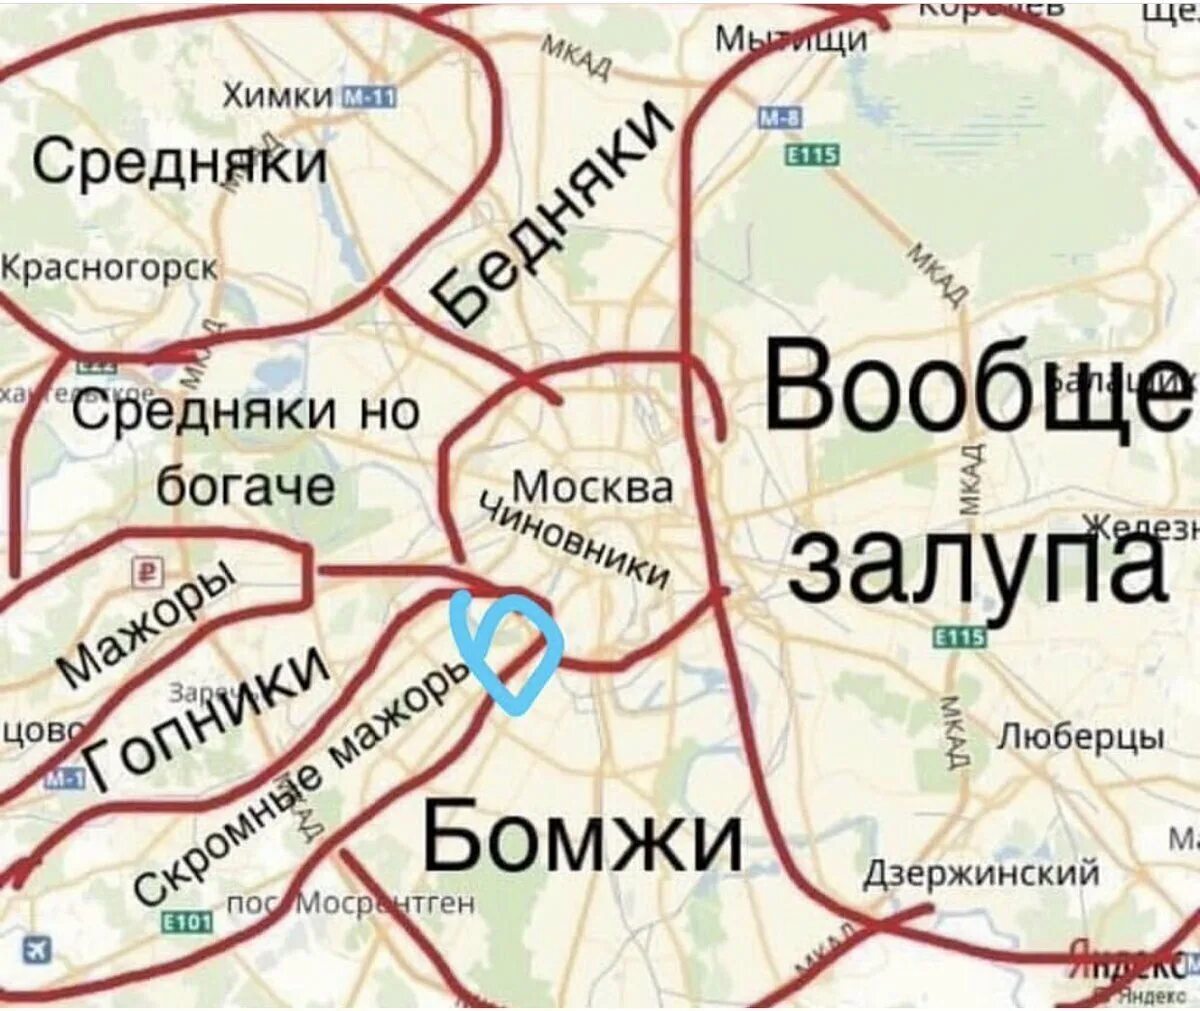 Районы Москвы на карте. Районы Москвы прикол. Смешная карта районов Москвы. Карта Москвы прикол.